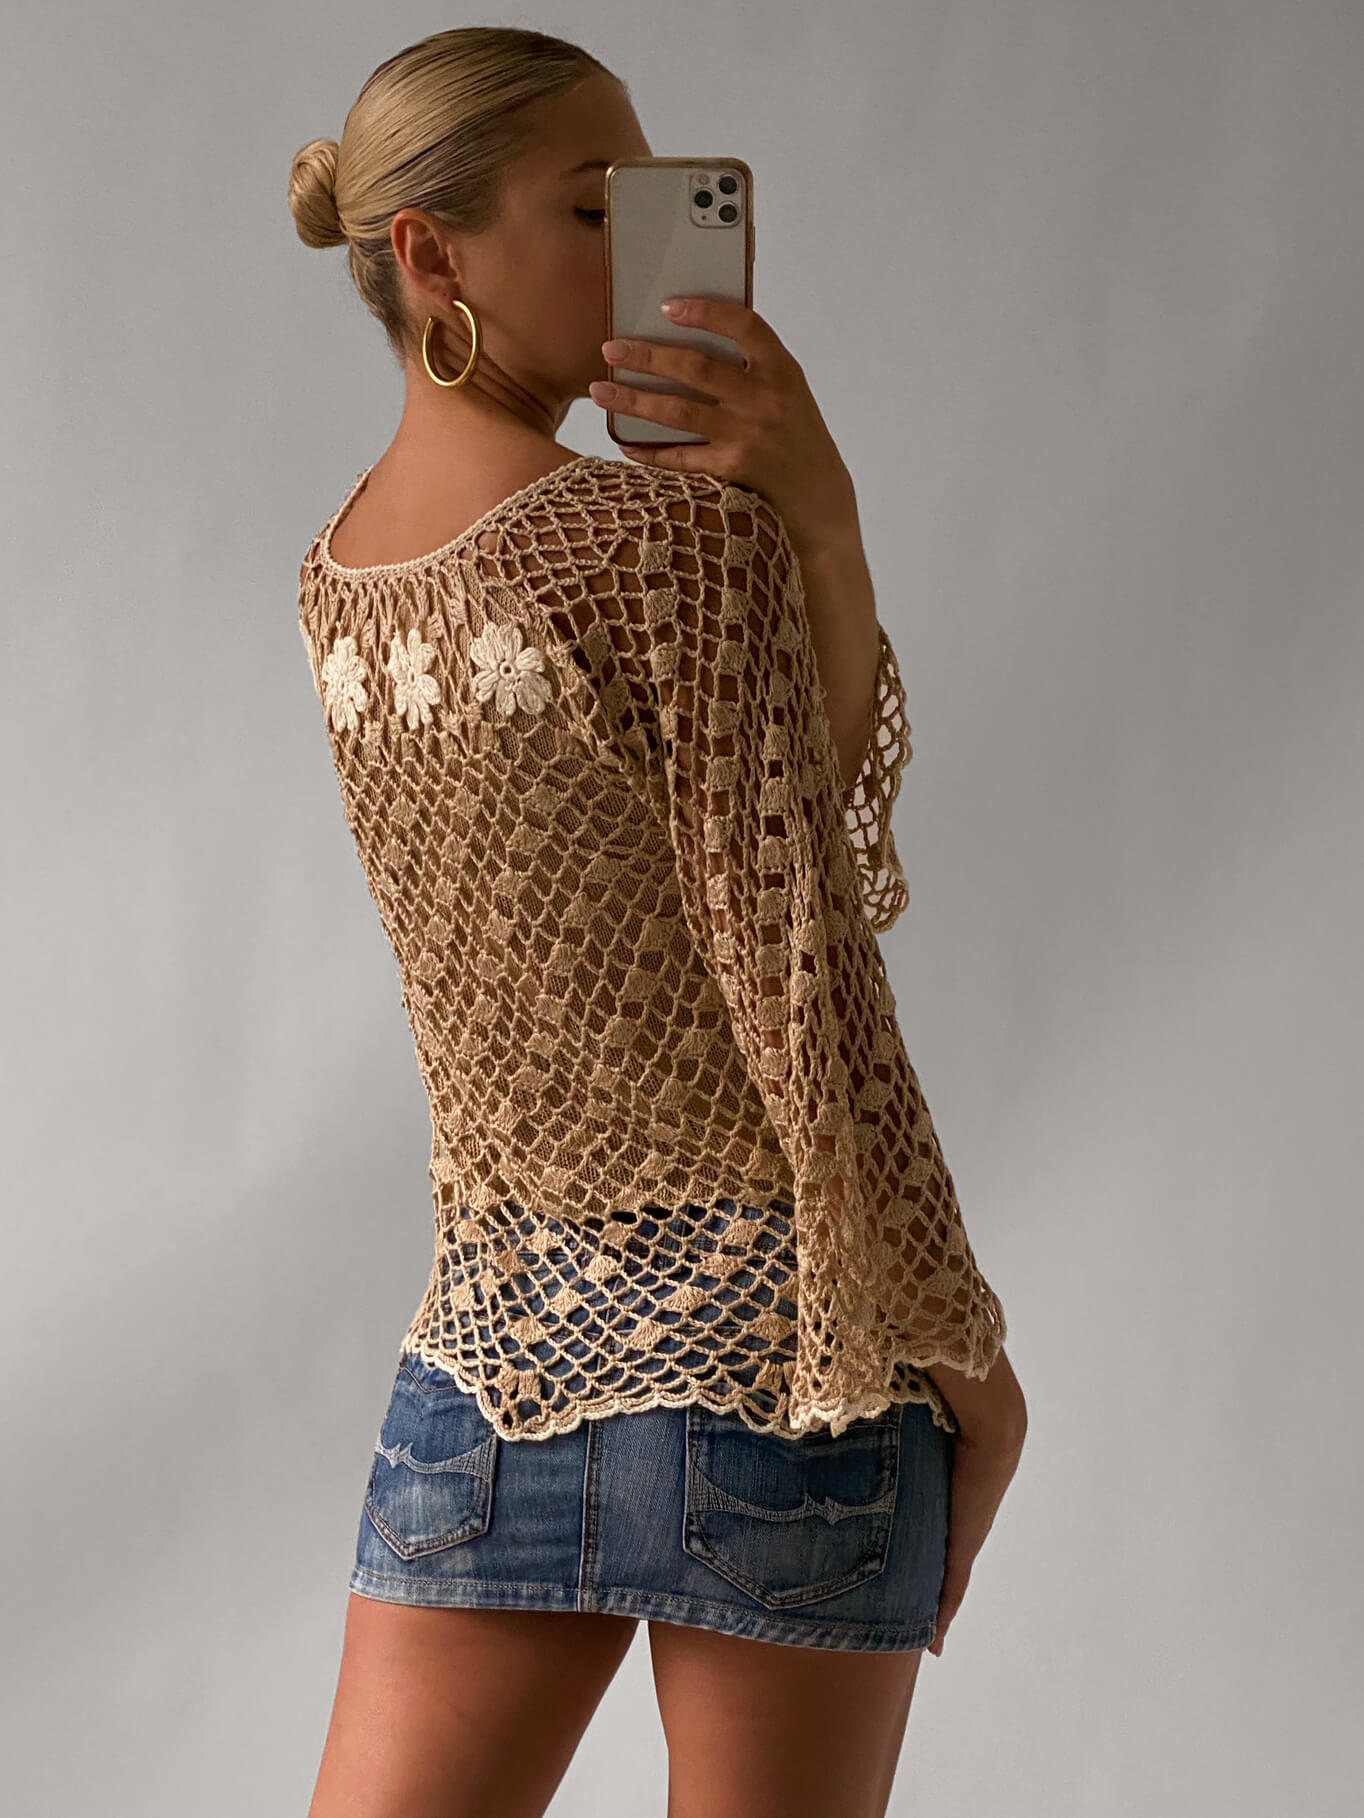 Vintage Floral Crochet Top | XS-M